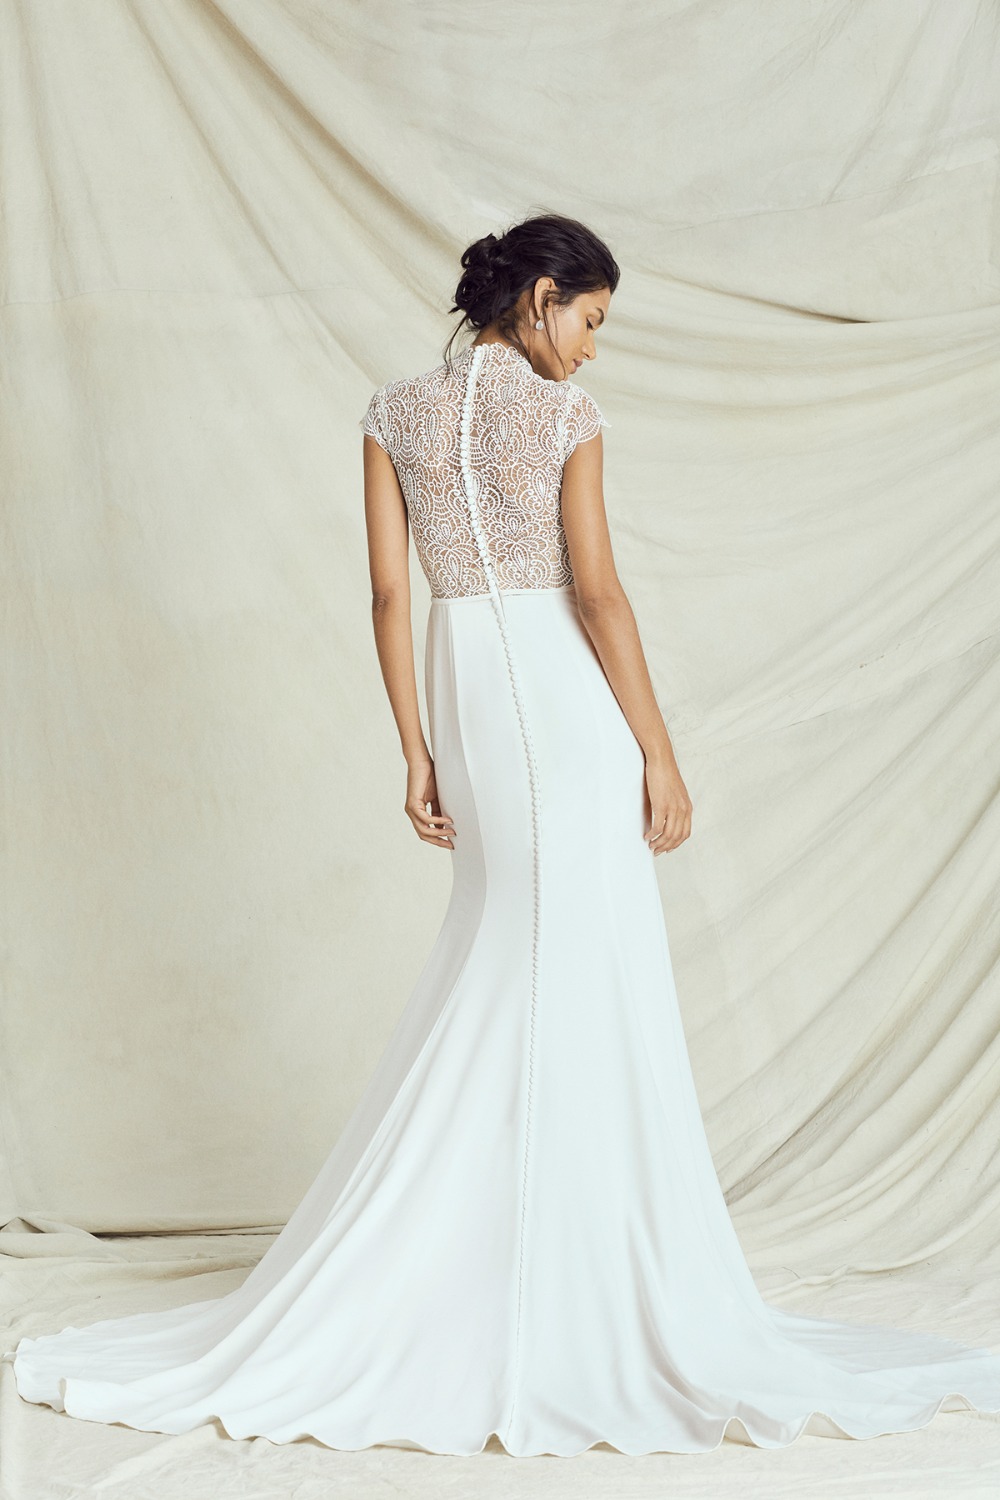 elegant laser cut top gown by Kelly Faetanini